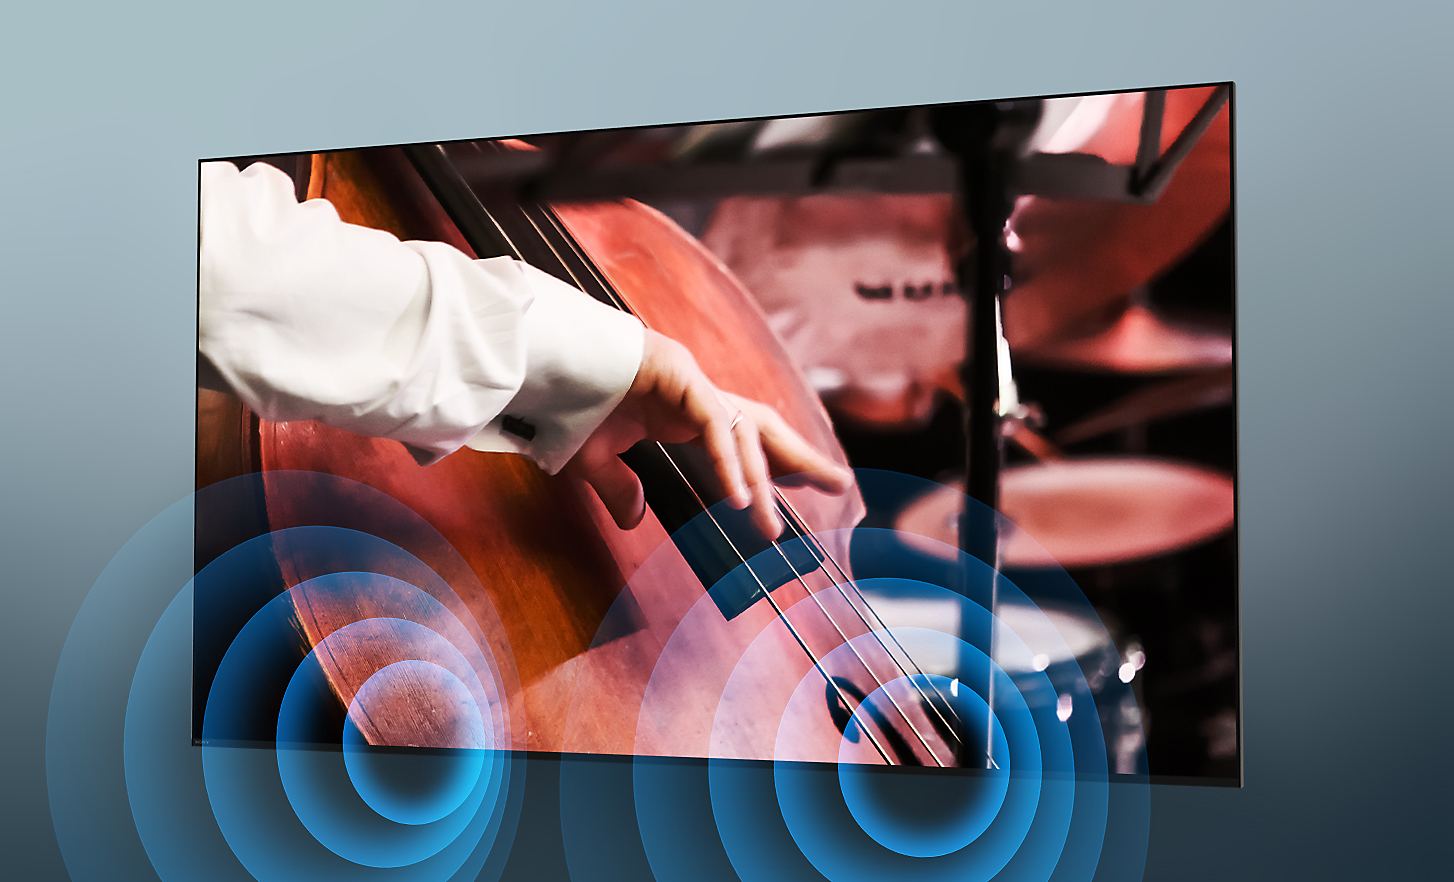 BRAVIA Fernseher mit Screenshot einer Person, die in einem Orchester Kontrabass spielt